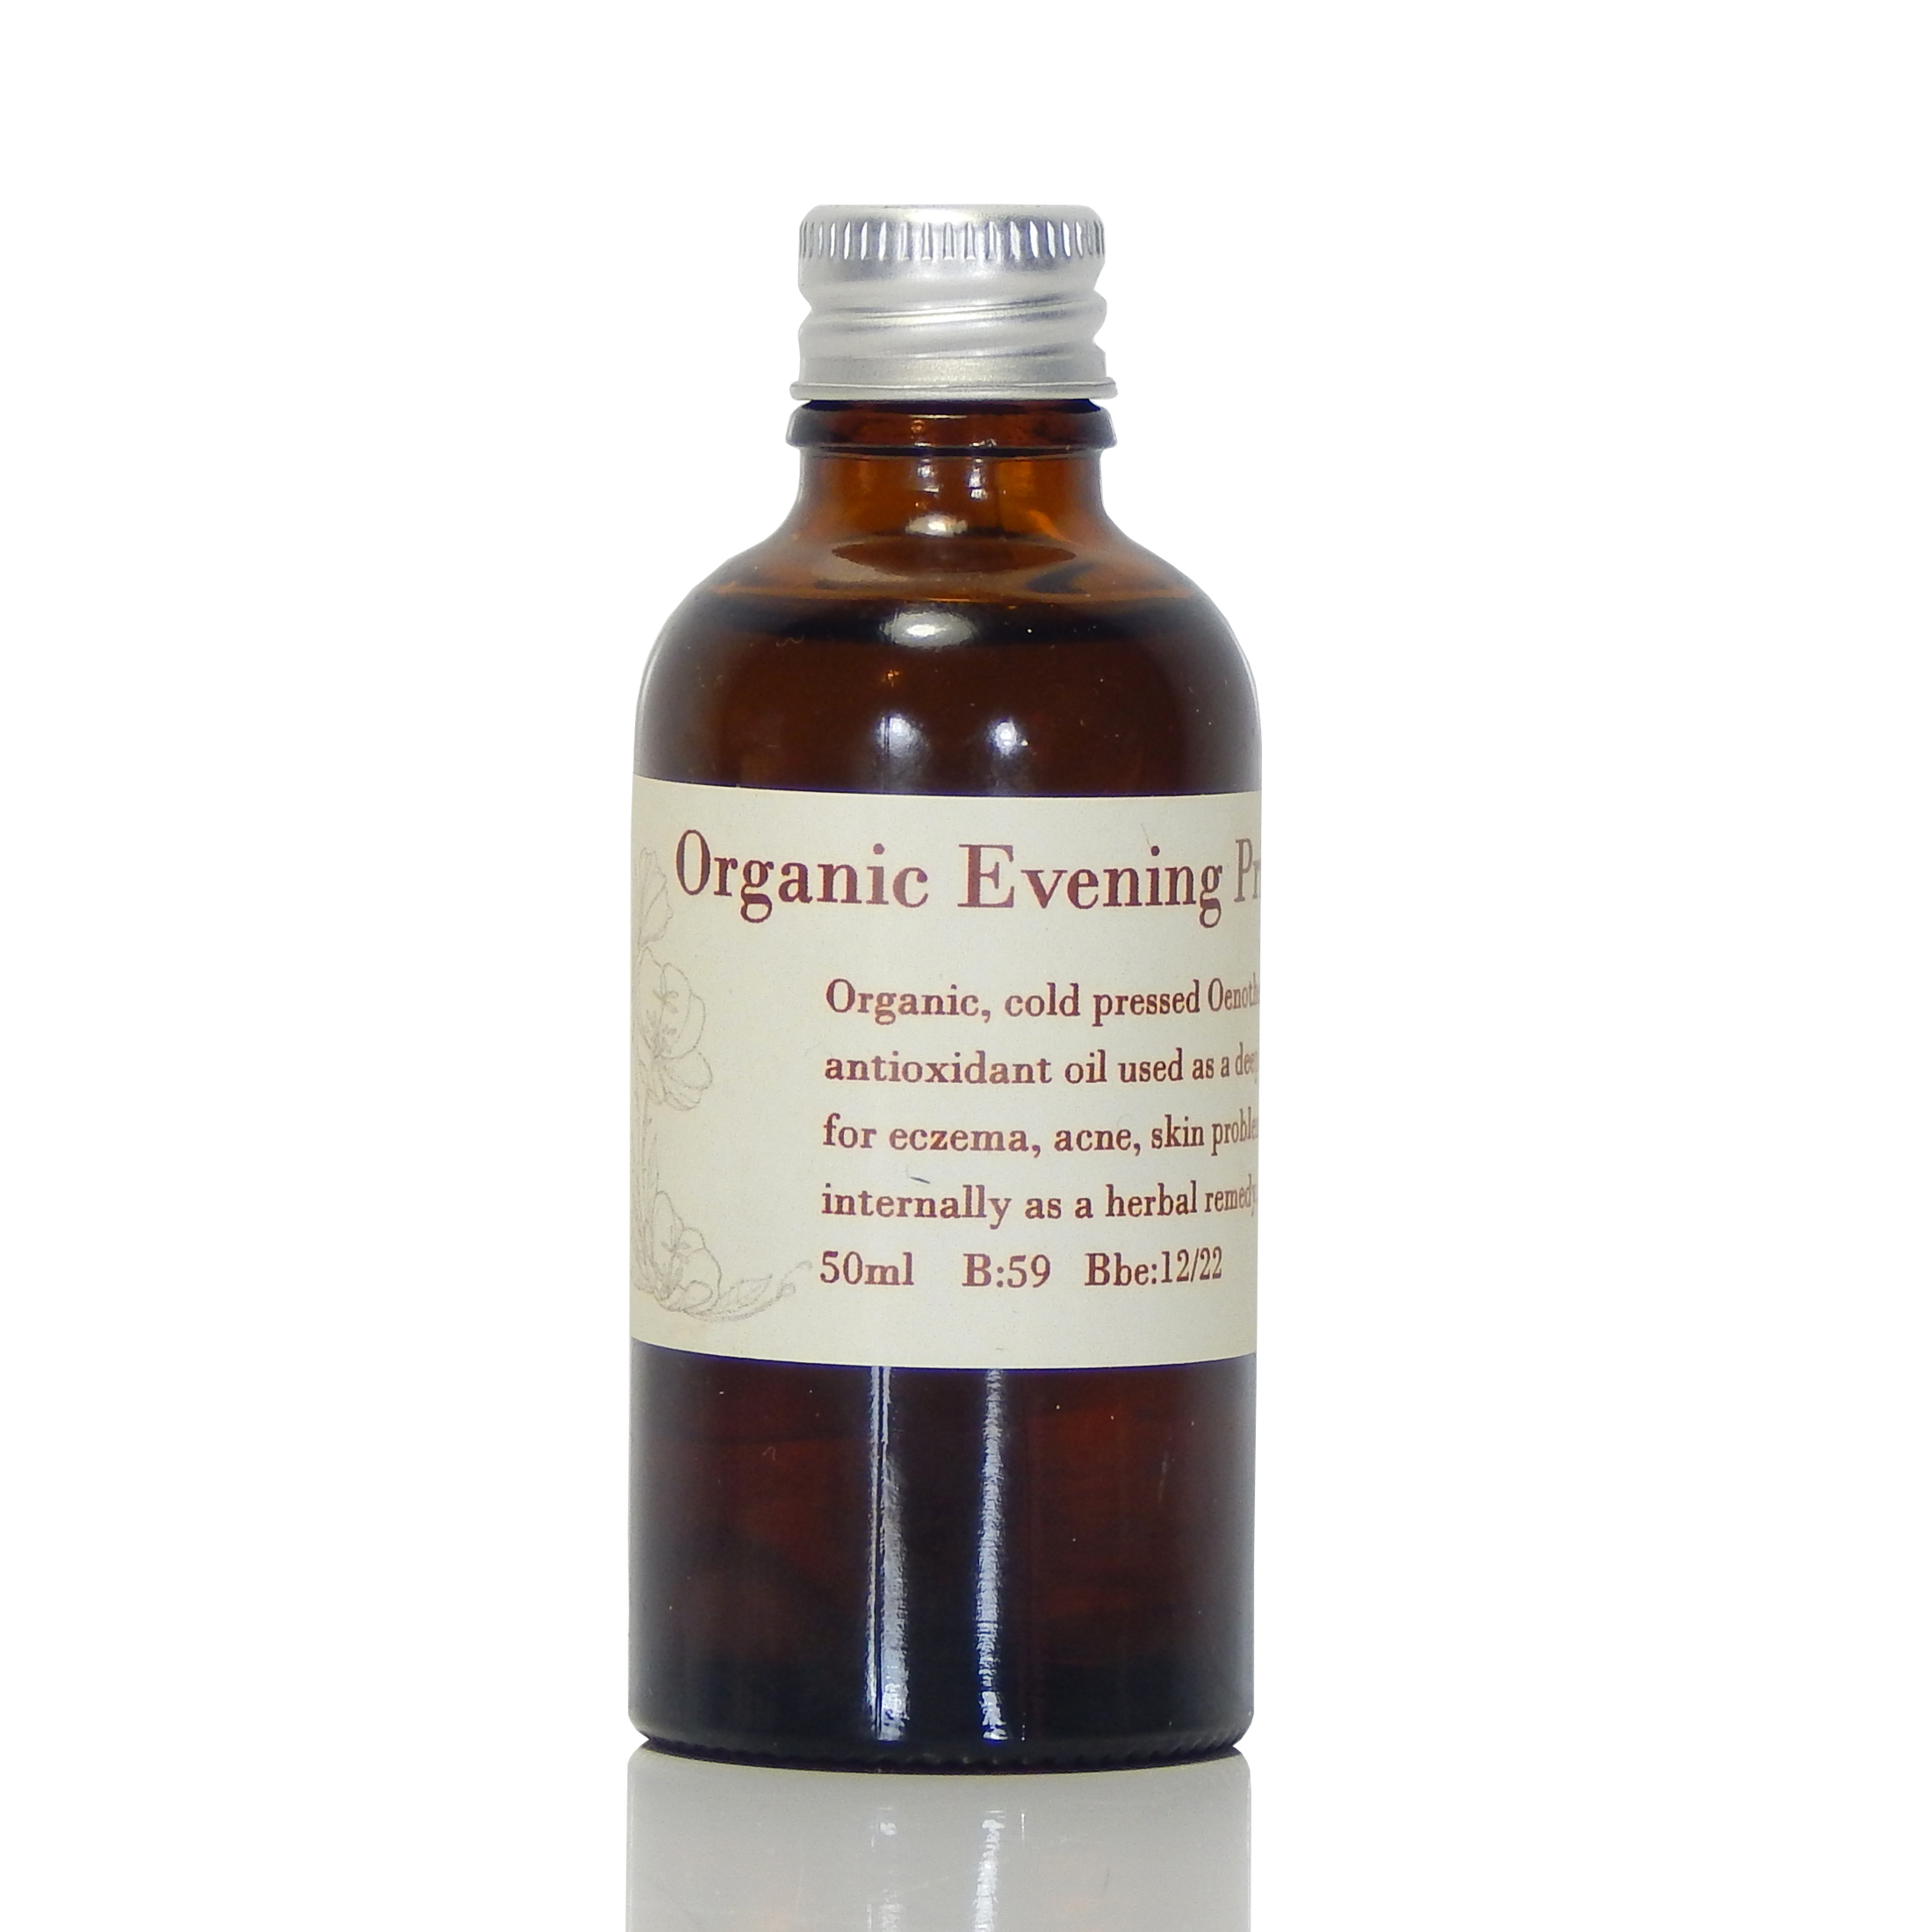 Evening Primrose Oil (Organic)